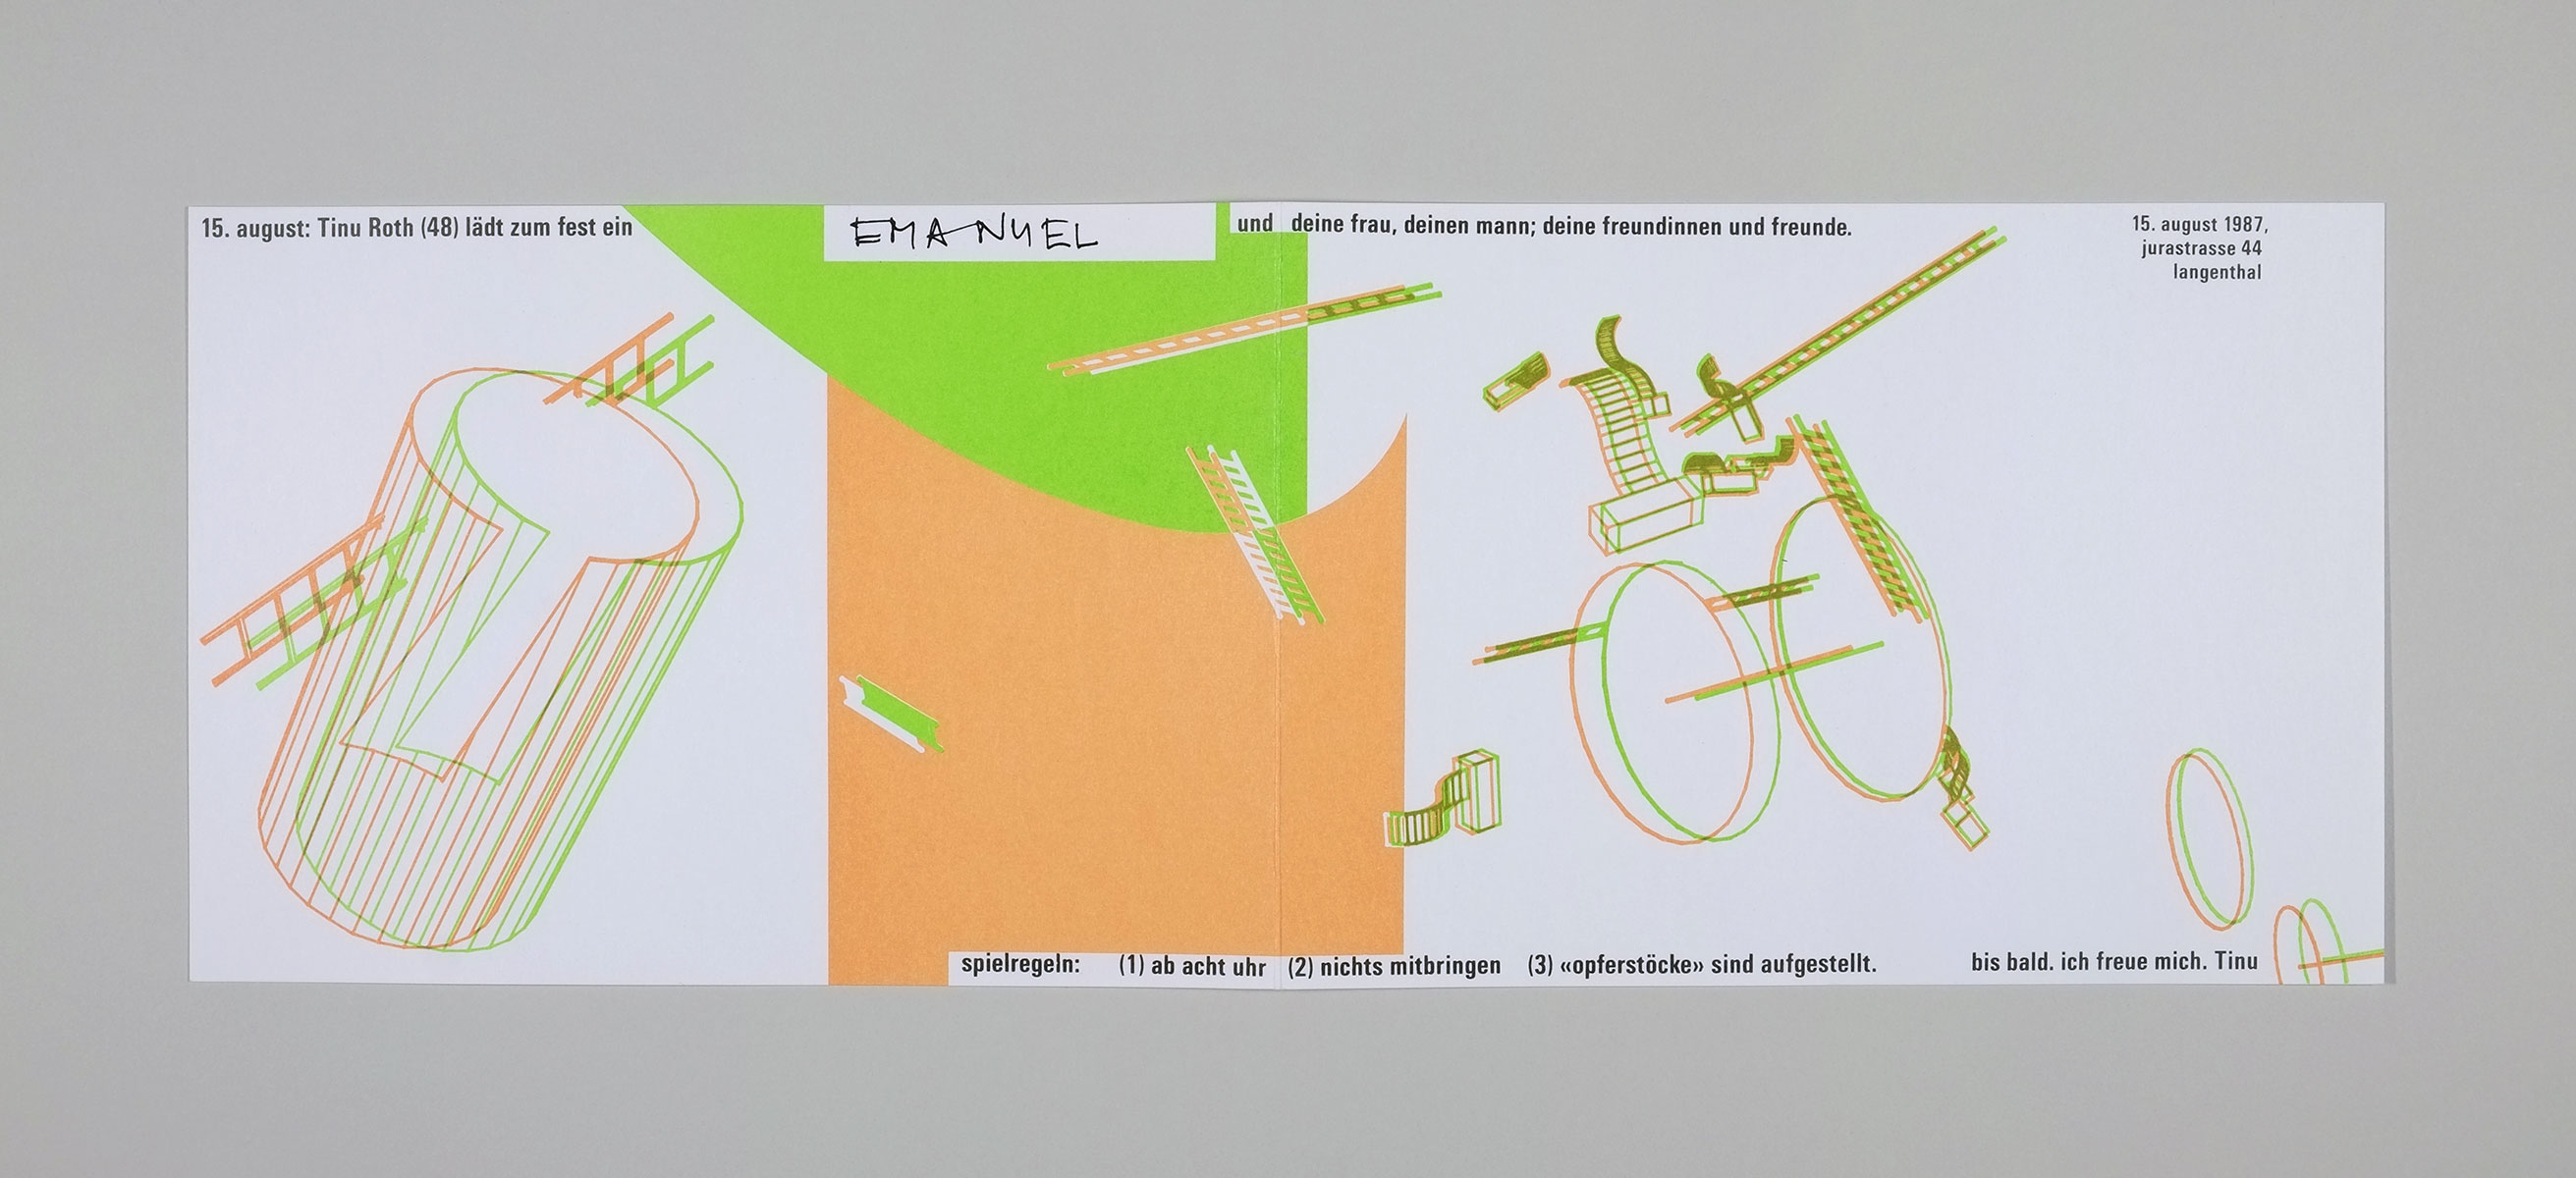 3D-Einladungskarte für Martin Roth Langenthal, 1987